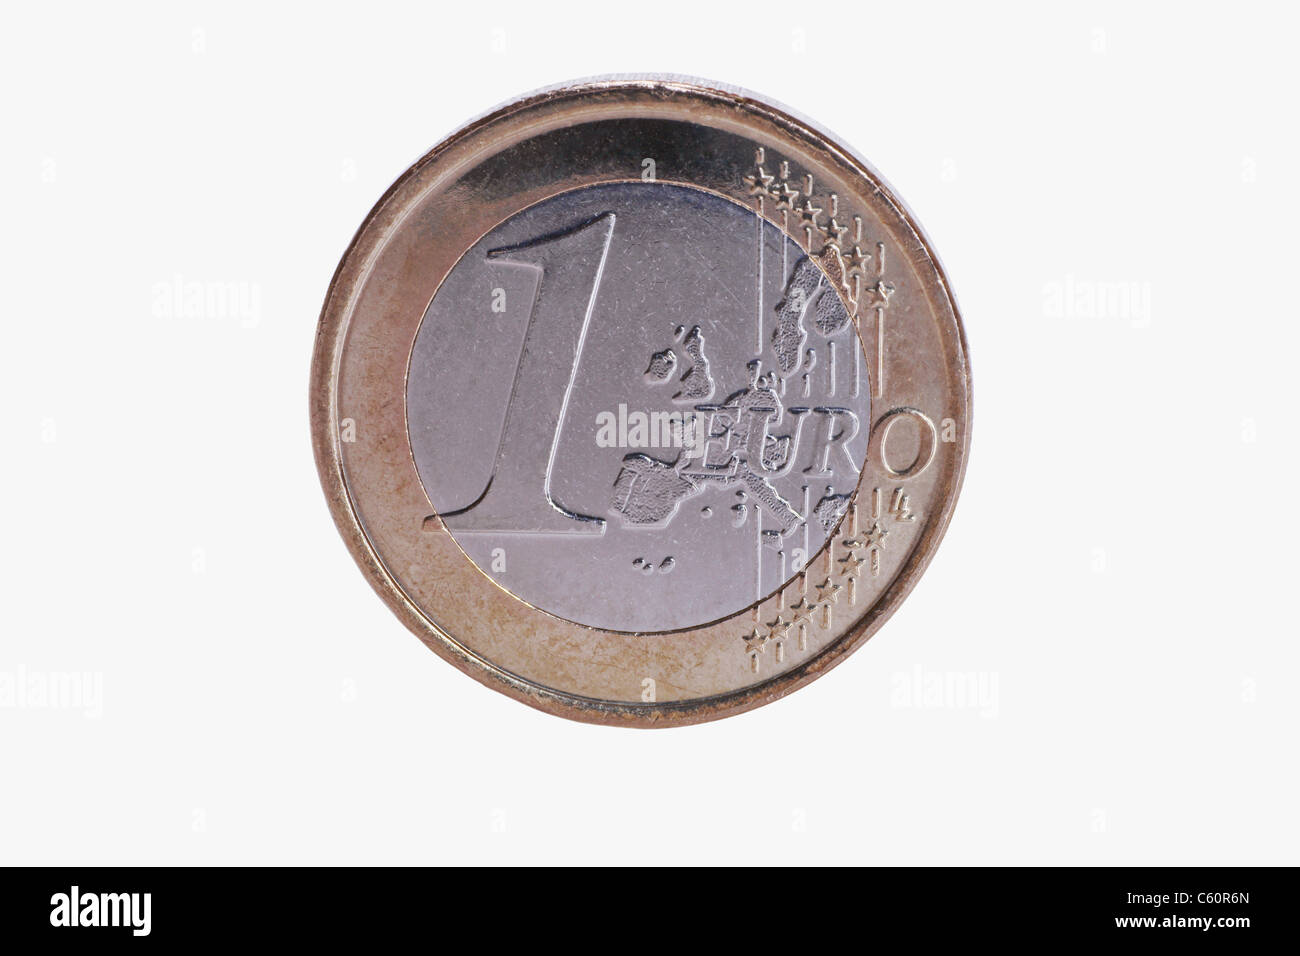 Detailansicht einer 1-Euro-Münze | photo détail d'un 1-Euro-Coin Banque D'Images